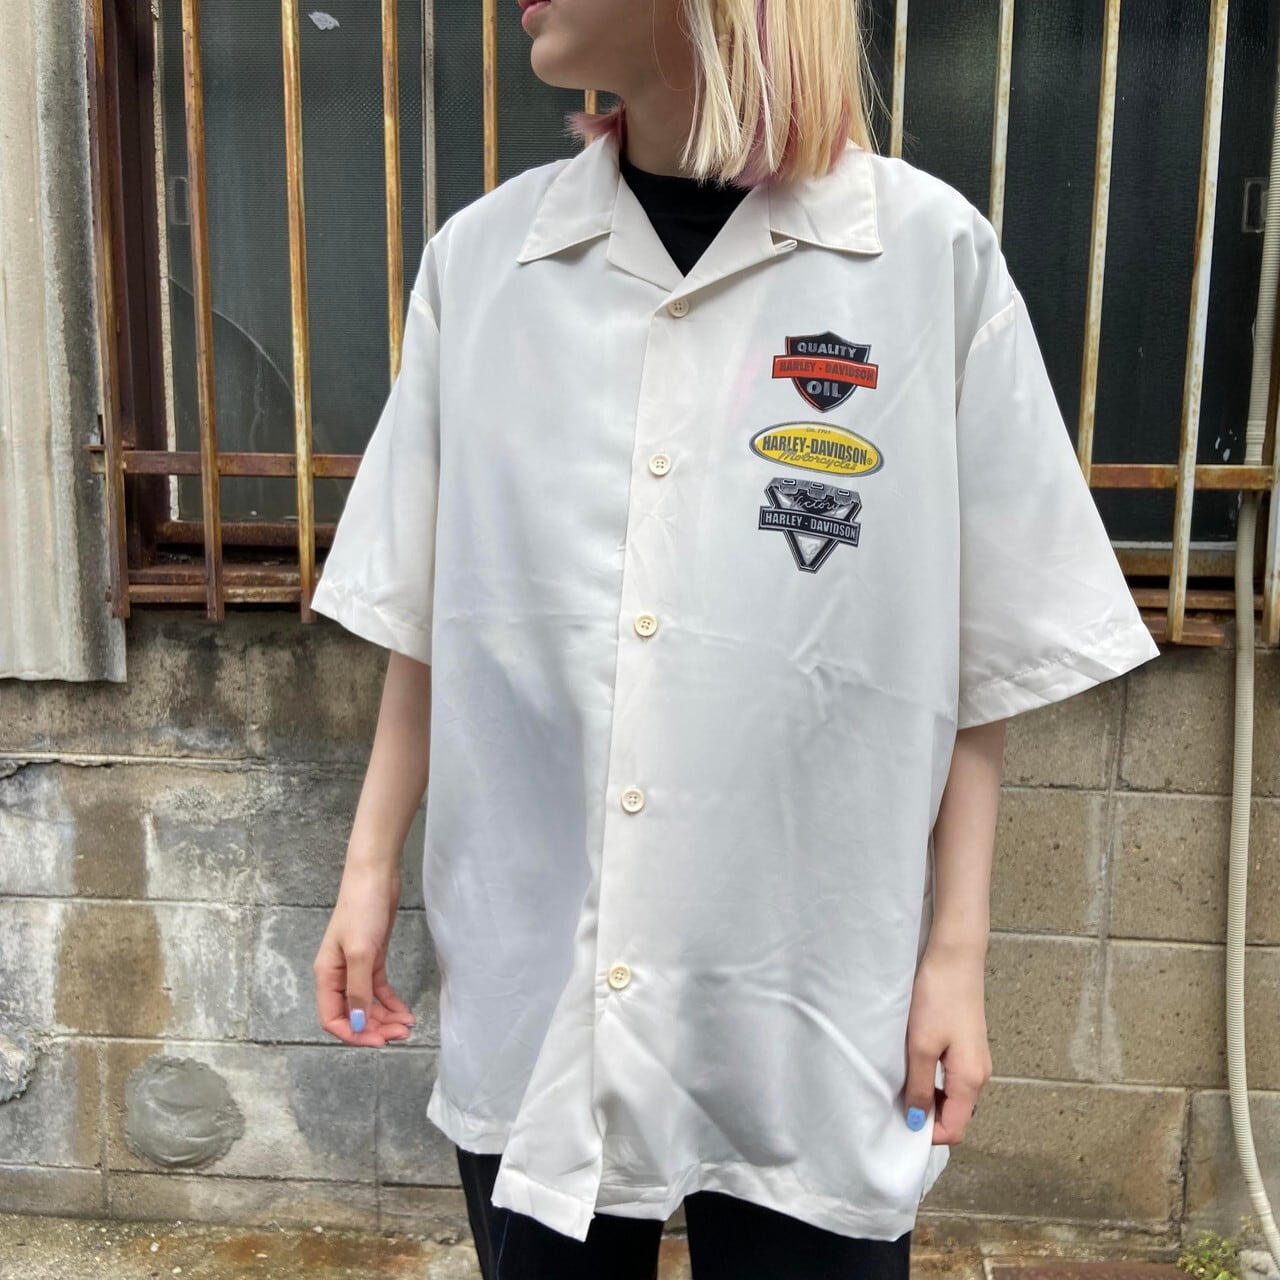 《激レア》ハーレーダビッドソン☆半袖シャツ XL 刺繍デカロゴ オフホワイト